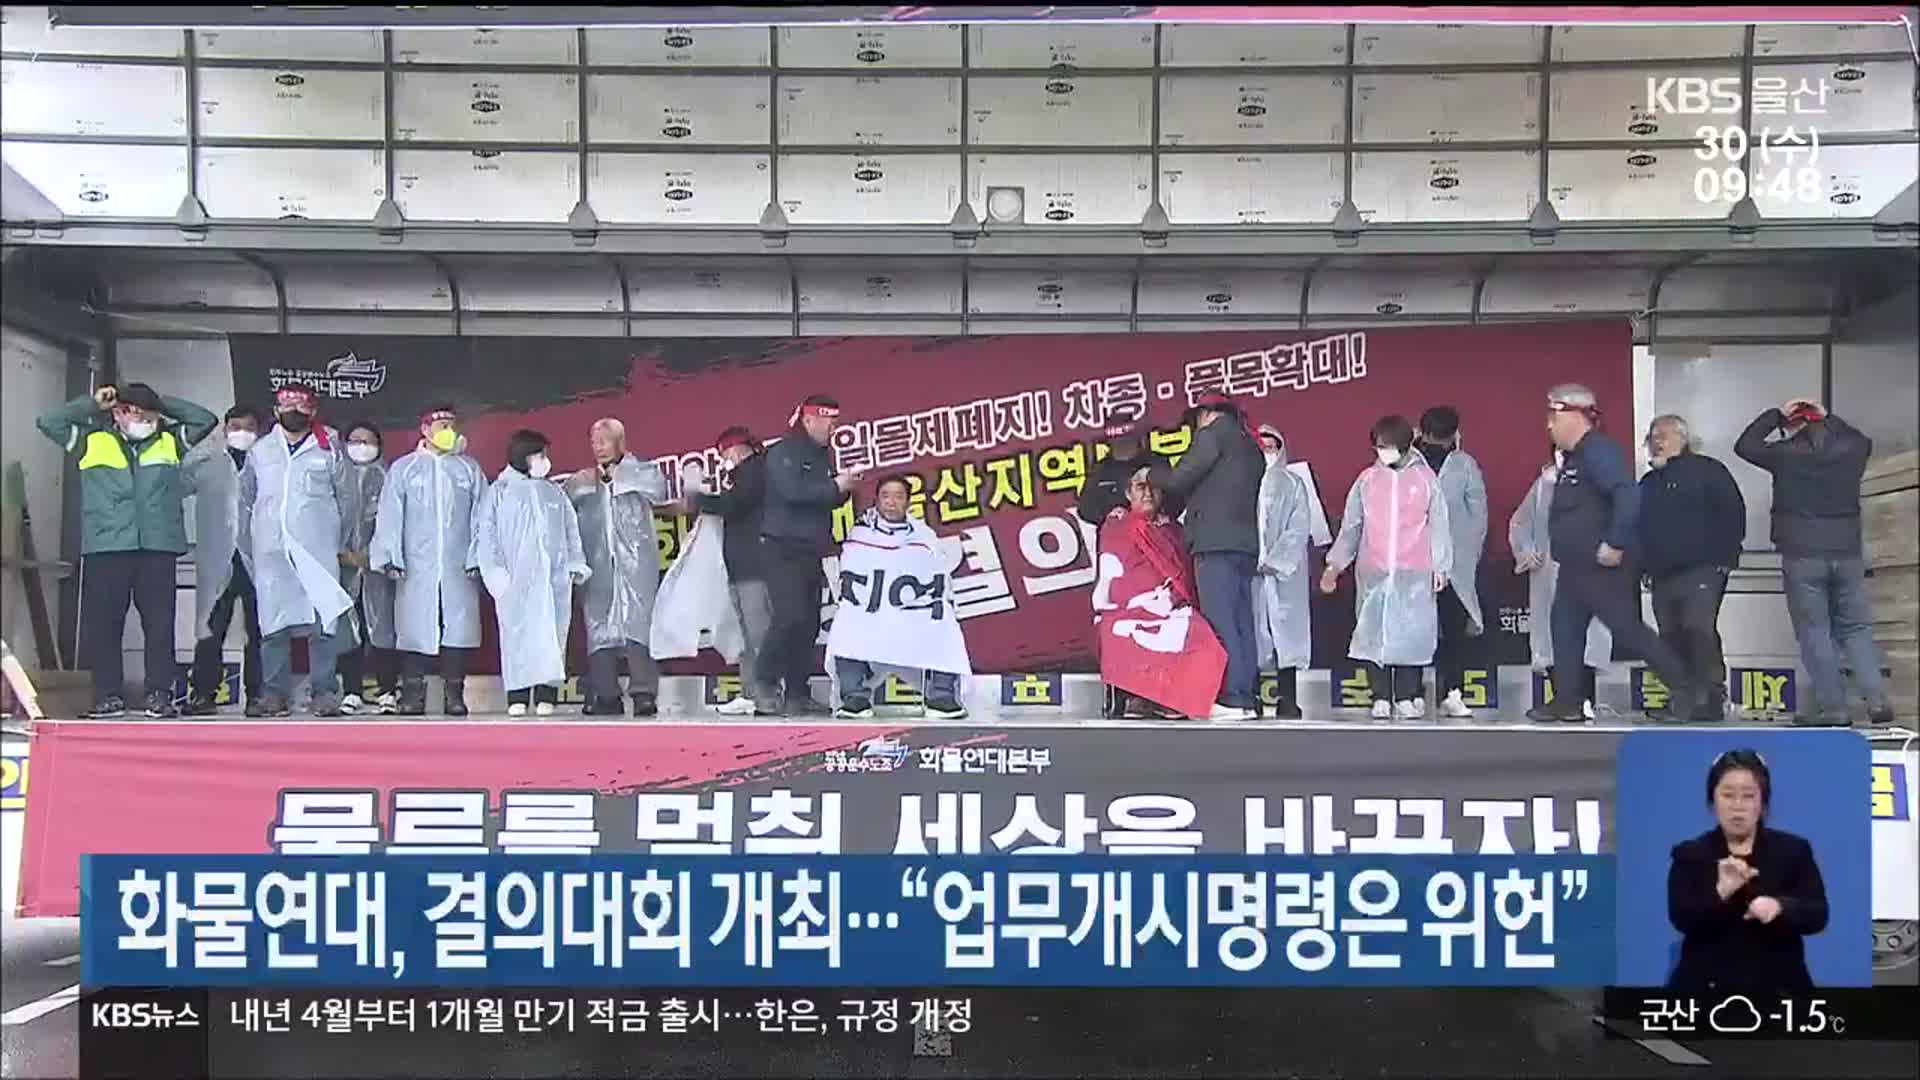 화물연대, 결의대회 개최…“업무개시명령은 위헌”